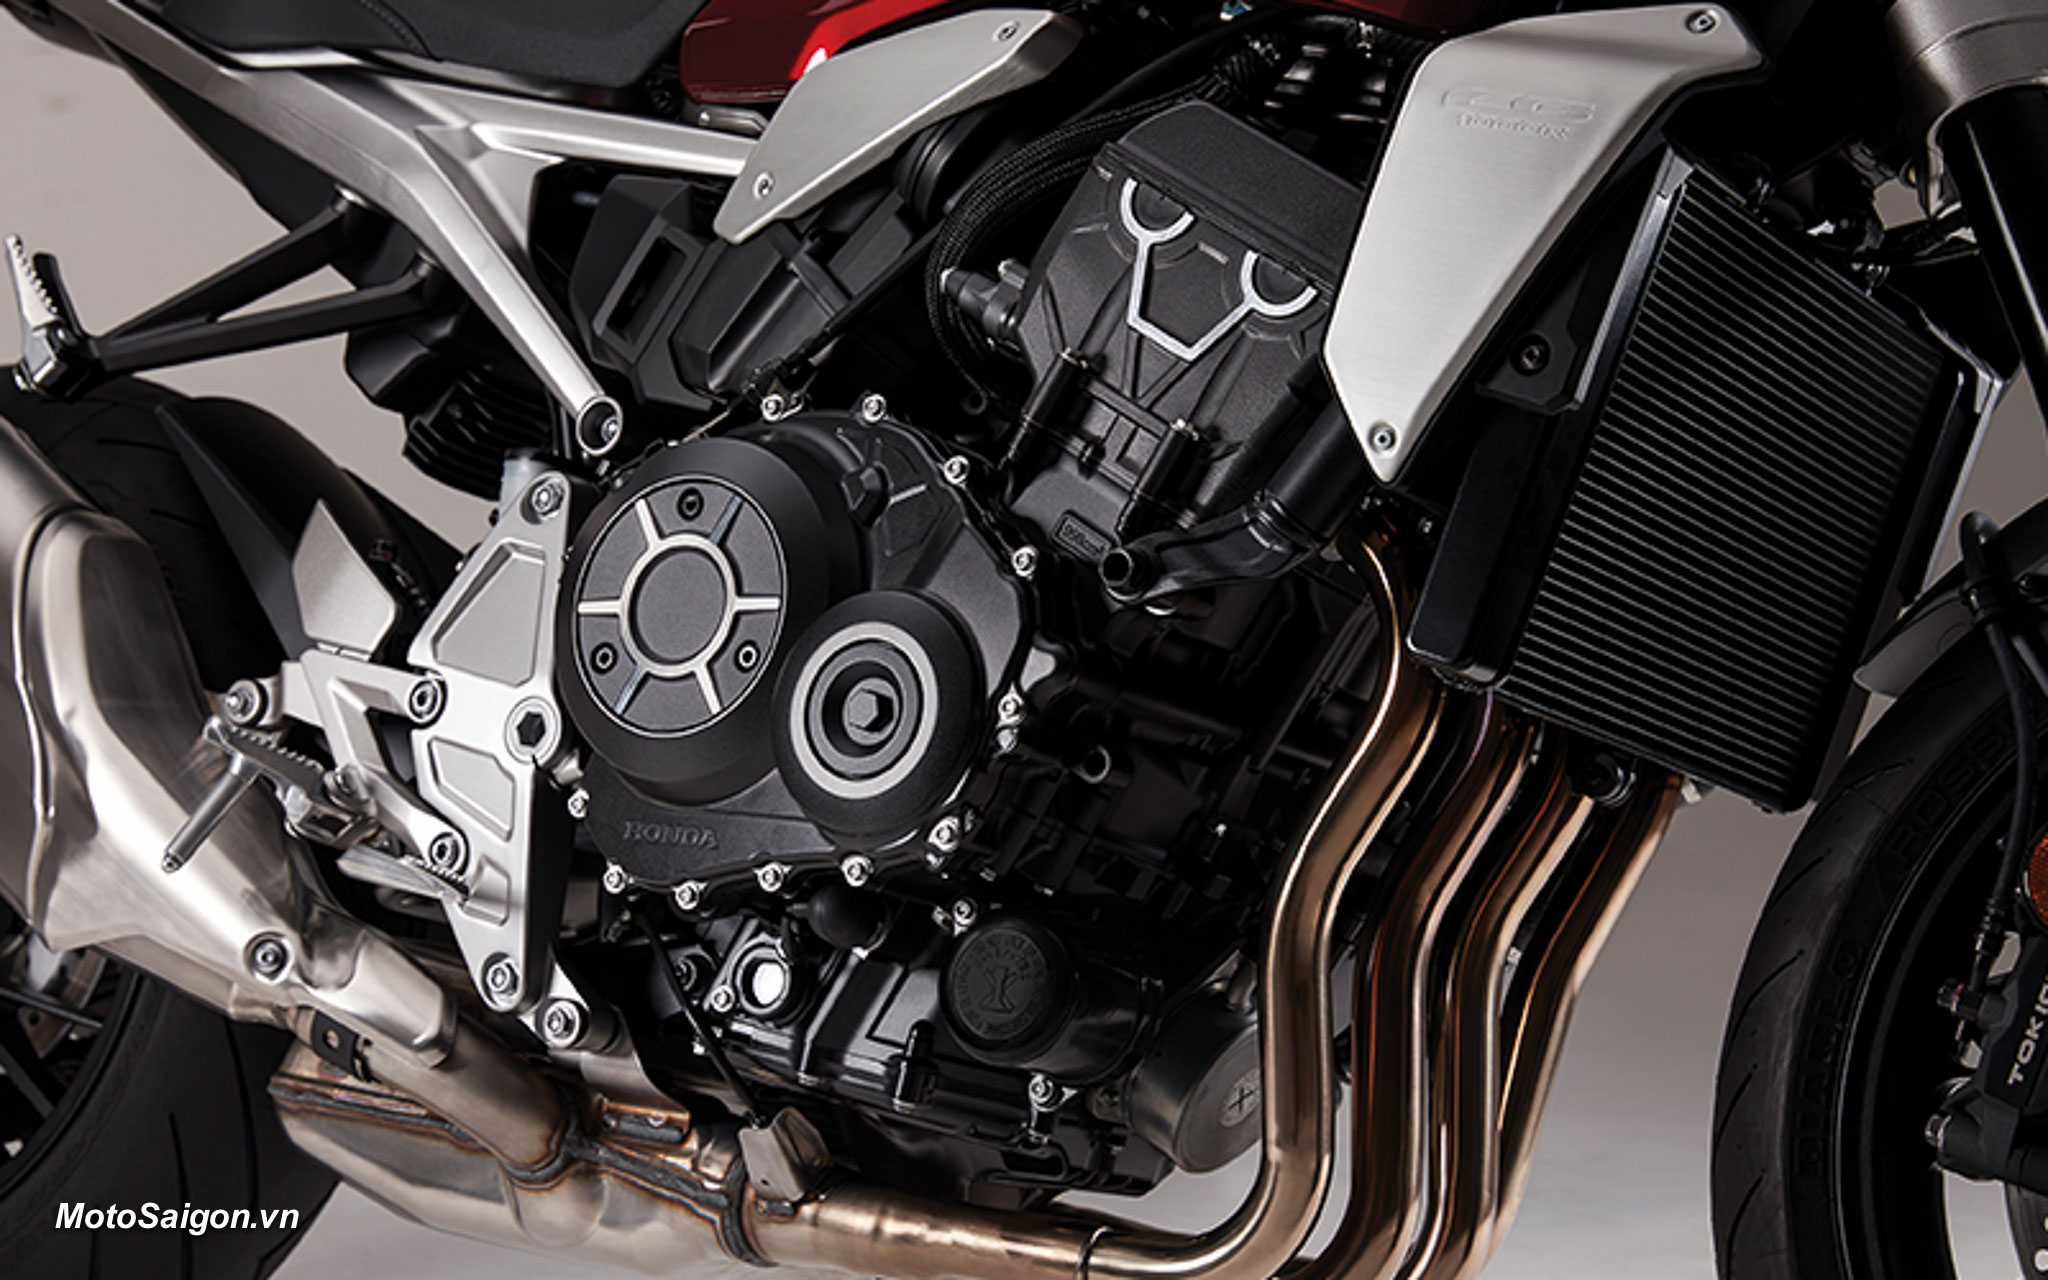 Giá xe Honda CB1000R 2022 phiên bản mới nhất: hình ảnh thông số kỹ thuật, giá bán.